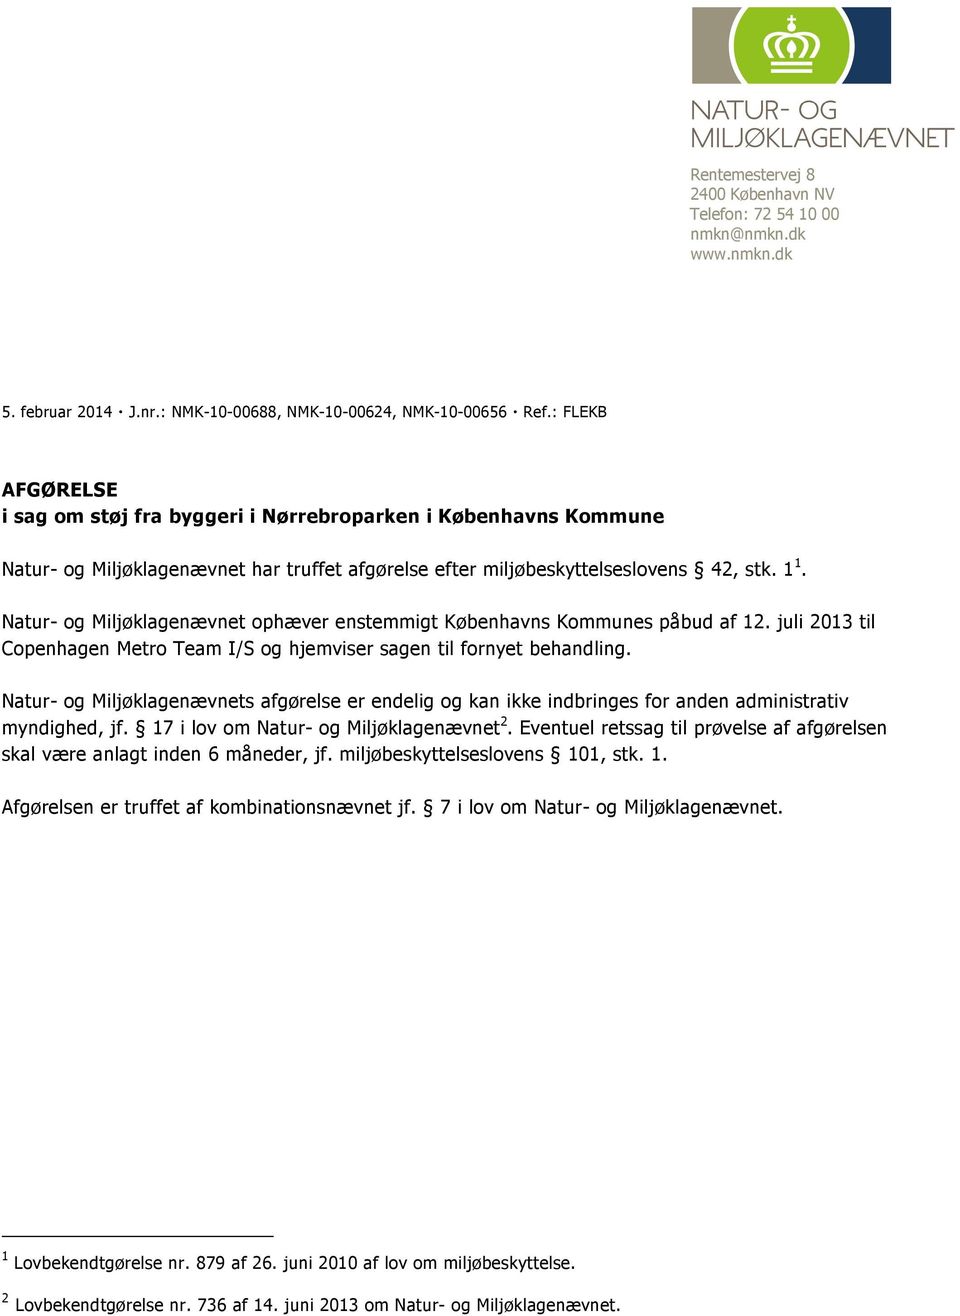 Natur- og Miljøklagenævnet ophæver enstemmigt Københavns Kommunes påbud af 12. juli 2013 til Copenhagen Metro Team I/S og hjemviser sagen til fornyet behandling.